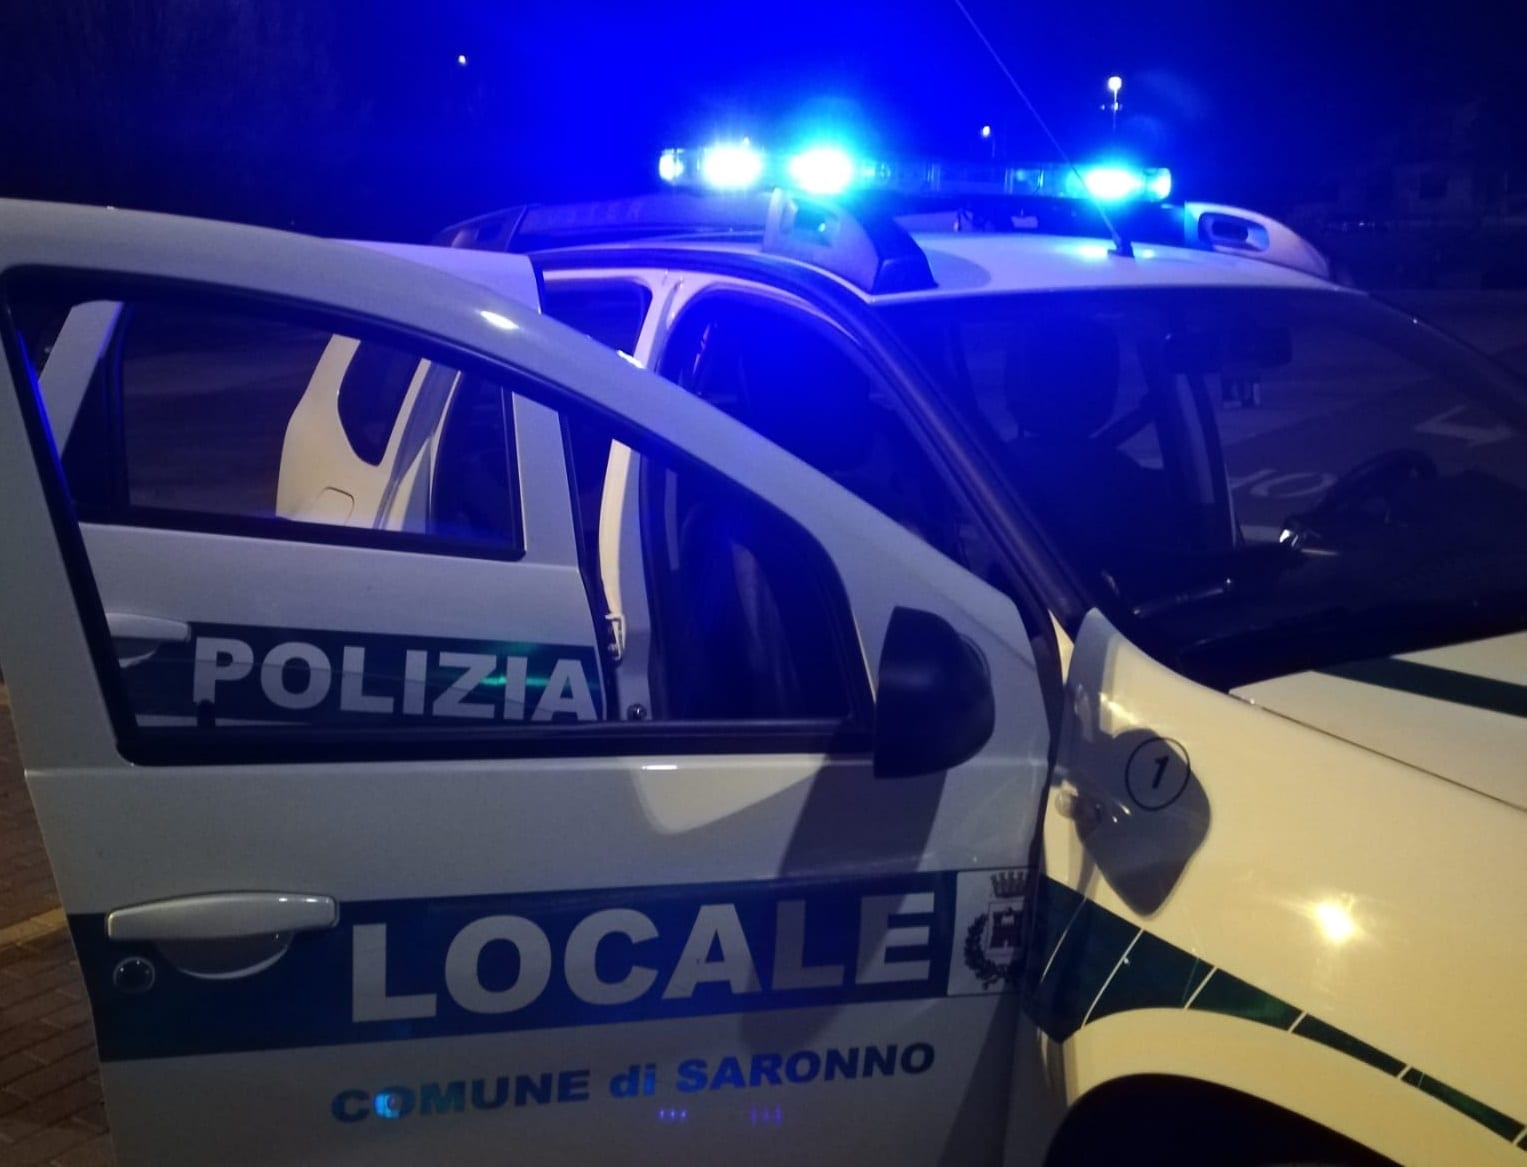 Rovellasca più sicura grazie ai rinforzi di polizia locale da Saronno